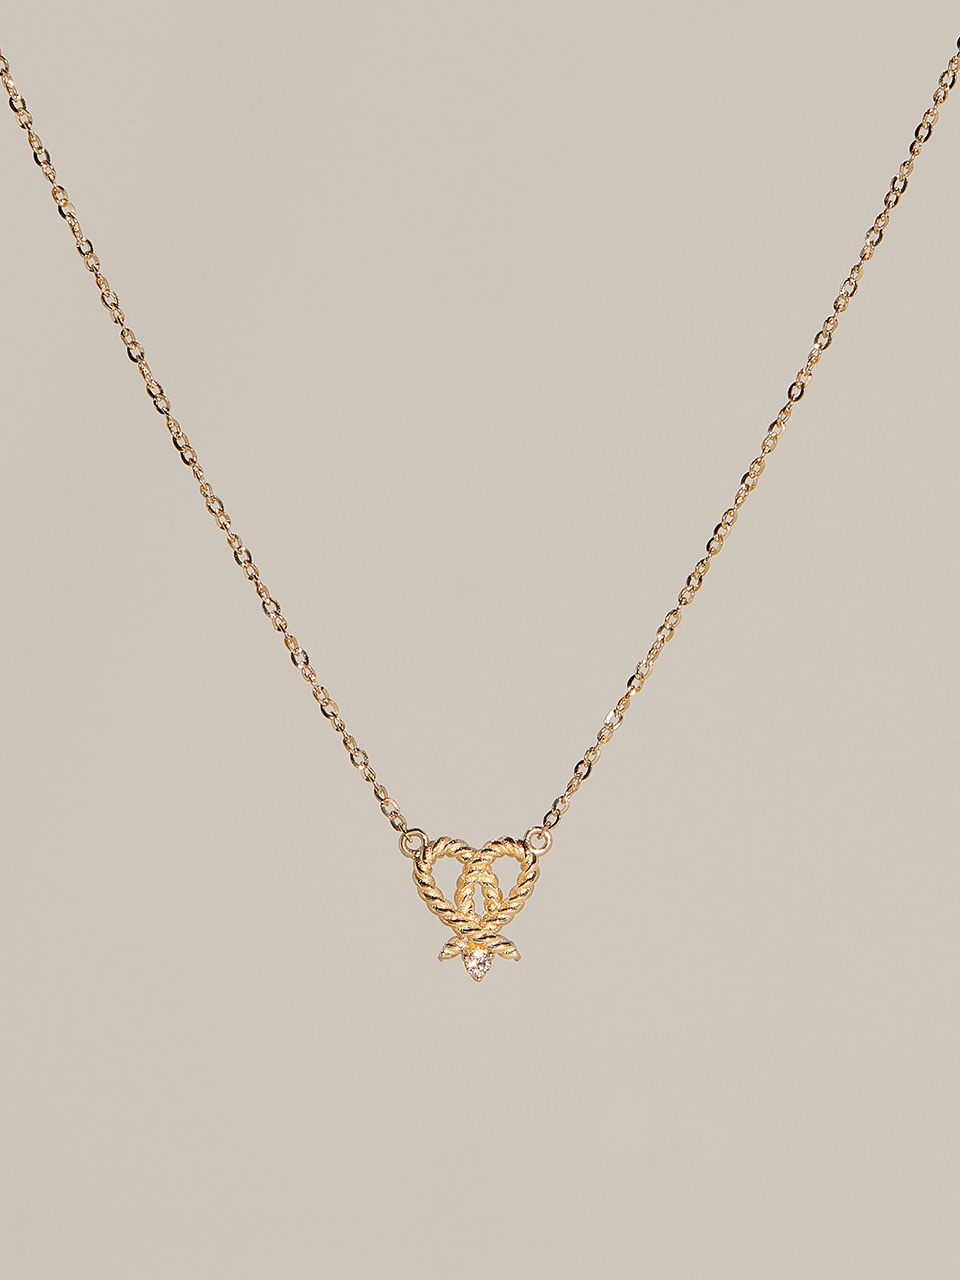 Paris Love Necklace